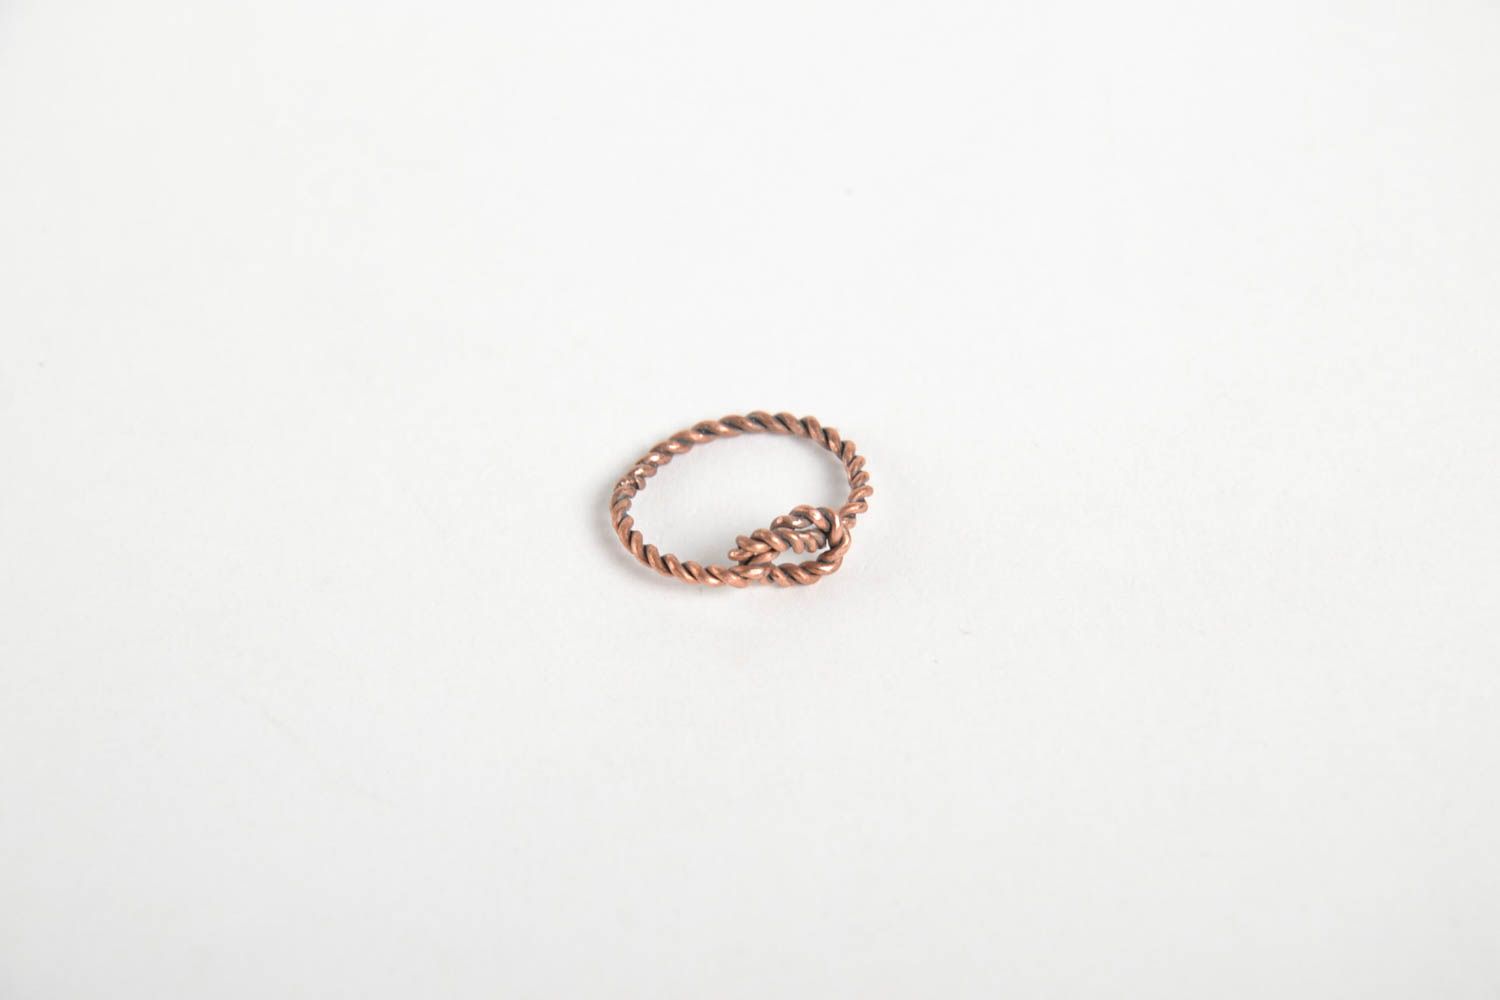 Необычное кольцо ручной работы женское кольцо и медной проволоки красивое кольцо фото 4